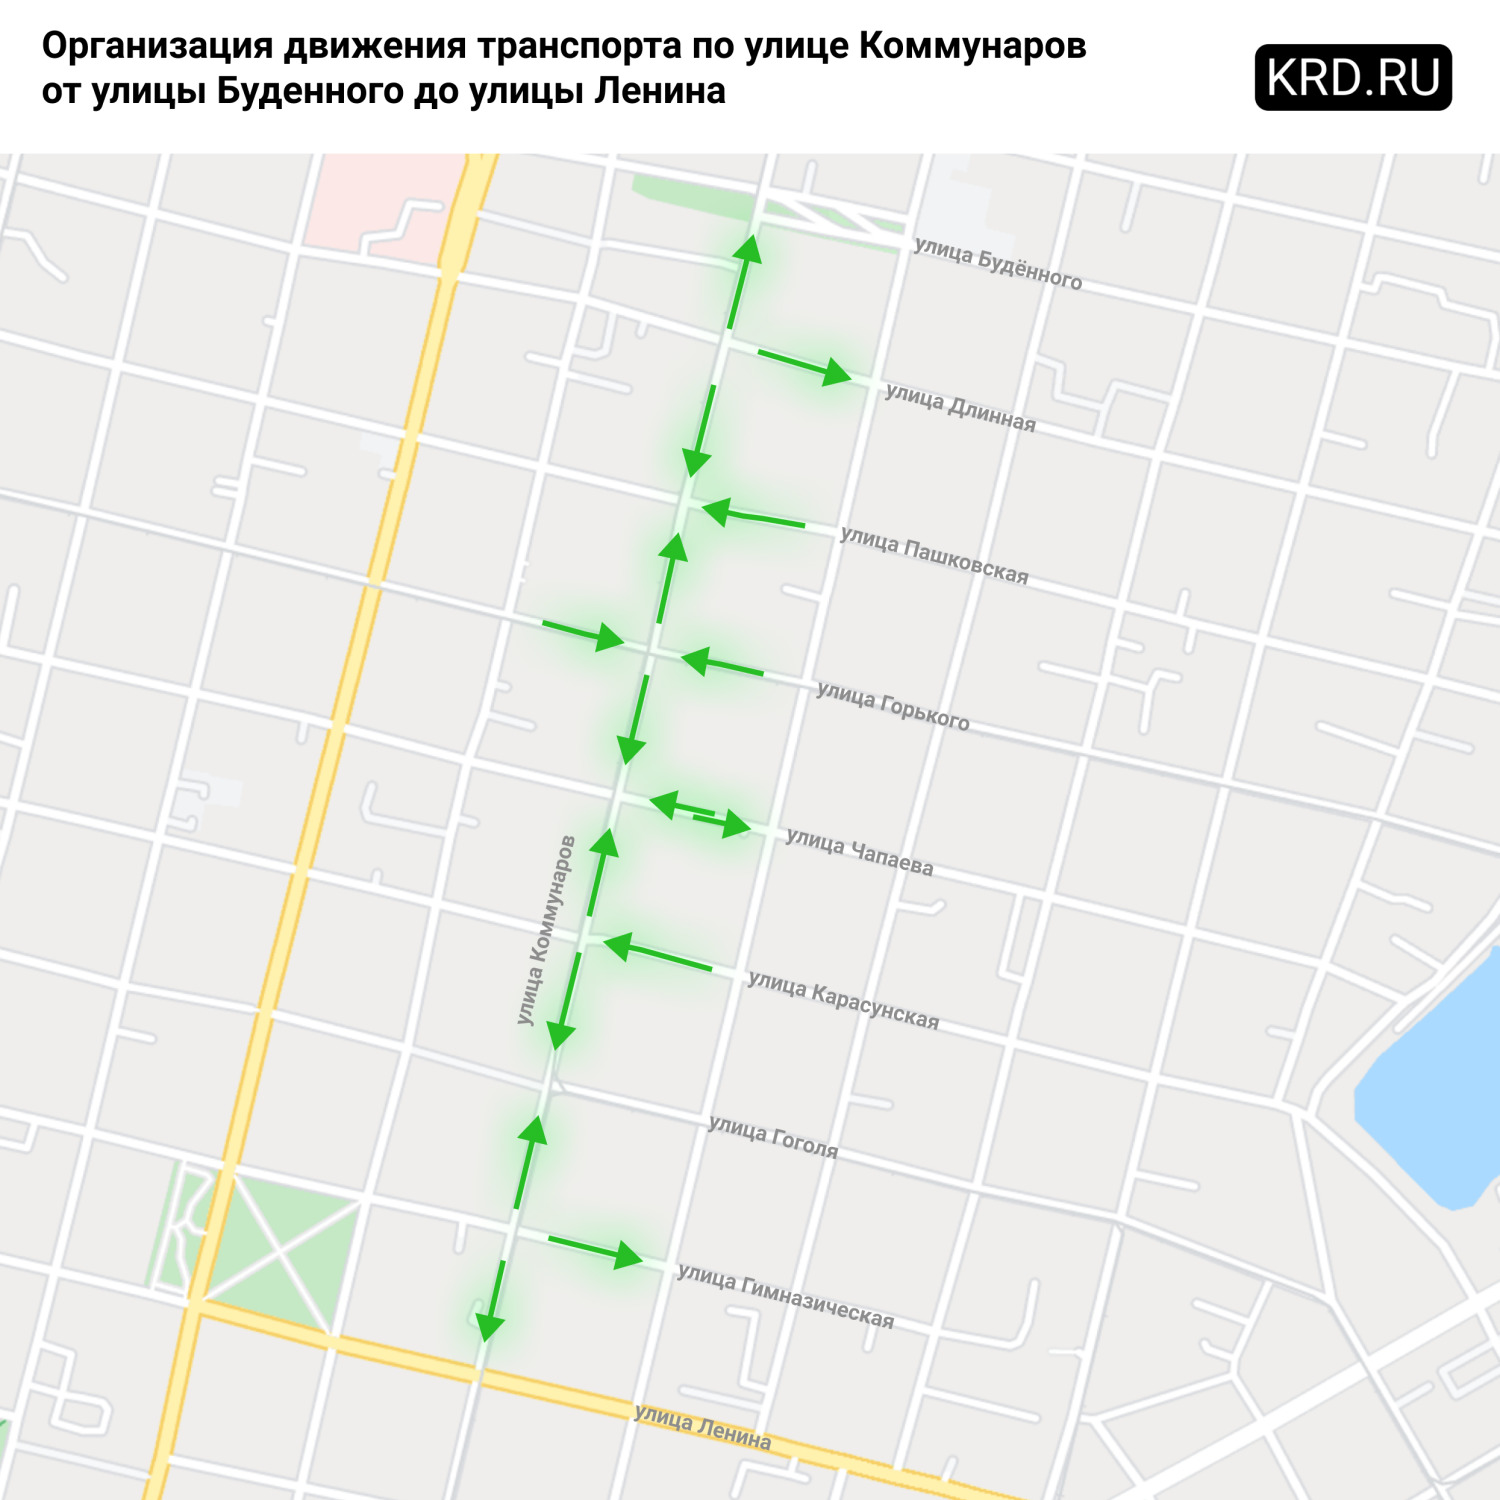 Новая схема движения по улице Коммунаров, которая начнет действовать с 15 мая